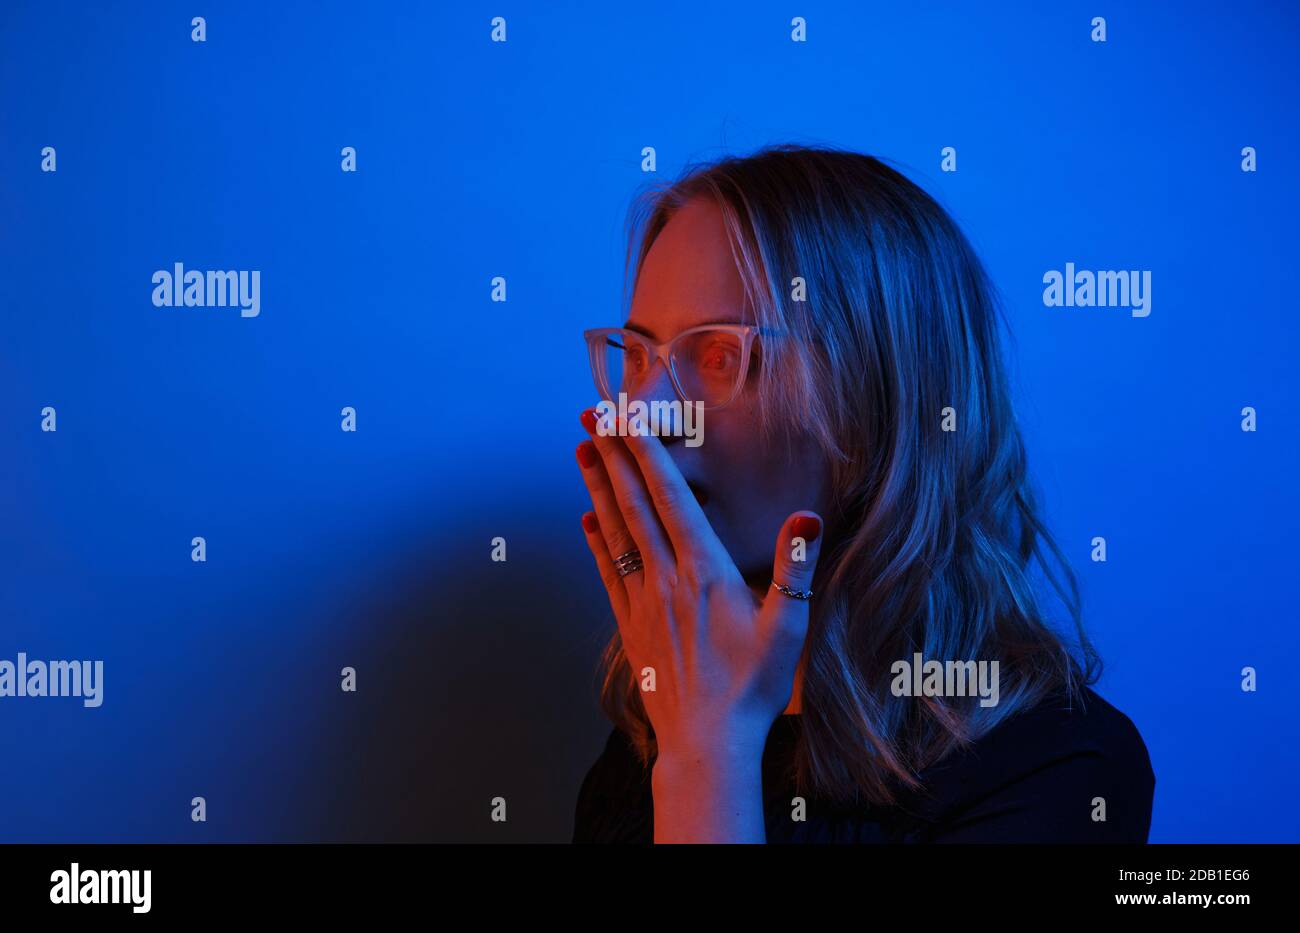 Ein junges kaukasisches Mädchen in Brille sieht auf einem dunkelblauen Neon-Hintergrund überraschend zur Seite. Menschliche Emotion Konzept und Raum kopieren. Stockfoto